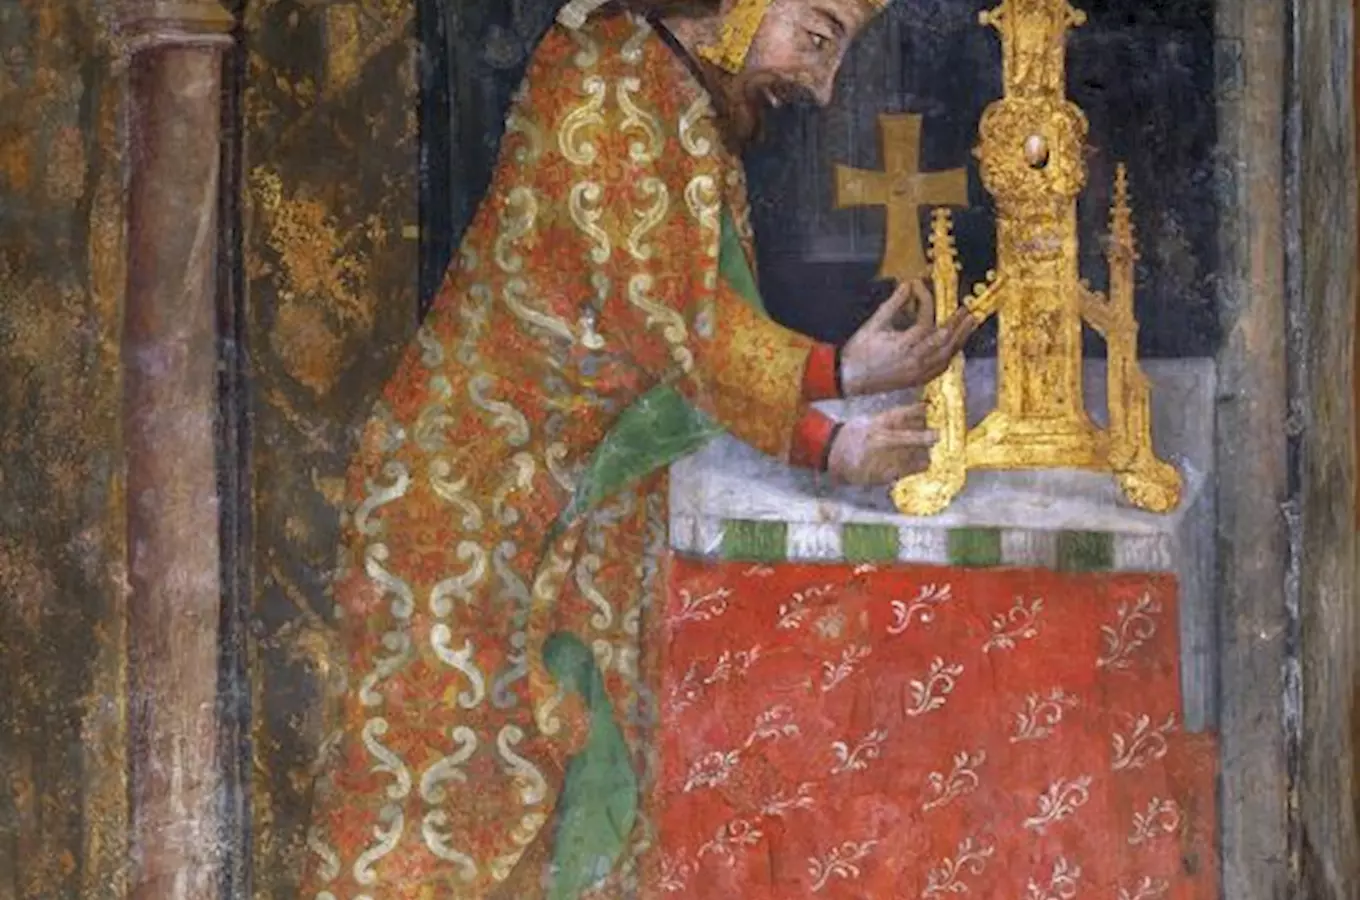 Císar Karel IV. ukládá relikvii dreva svatého Kríže do velkého ostatkového kríže (detail), kolem 1360, nástenná malba, hrad Karlštejn, kaple Panny Marie